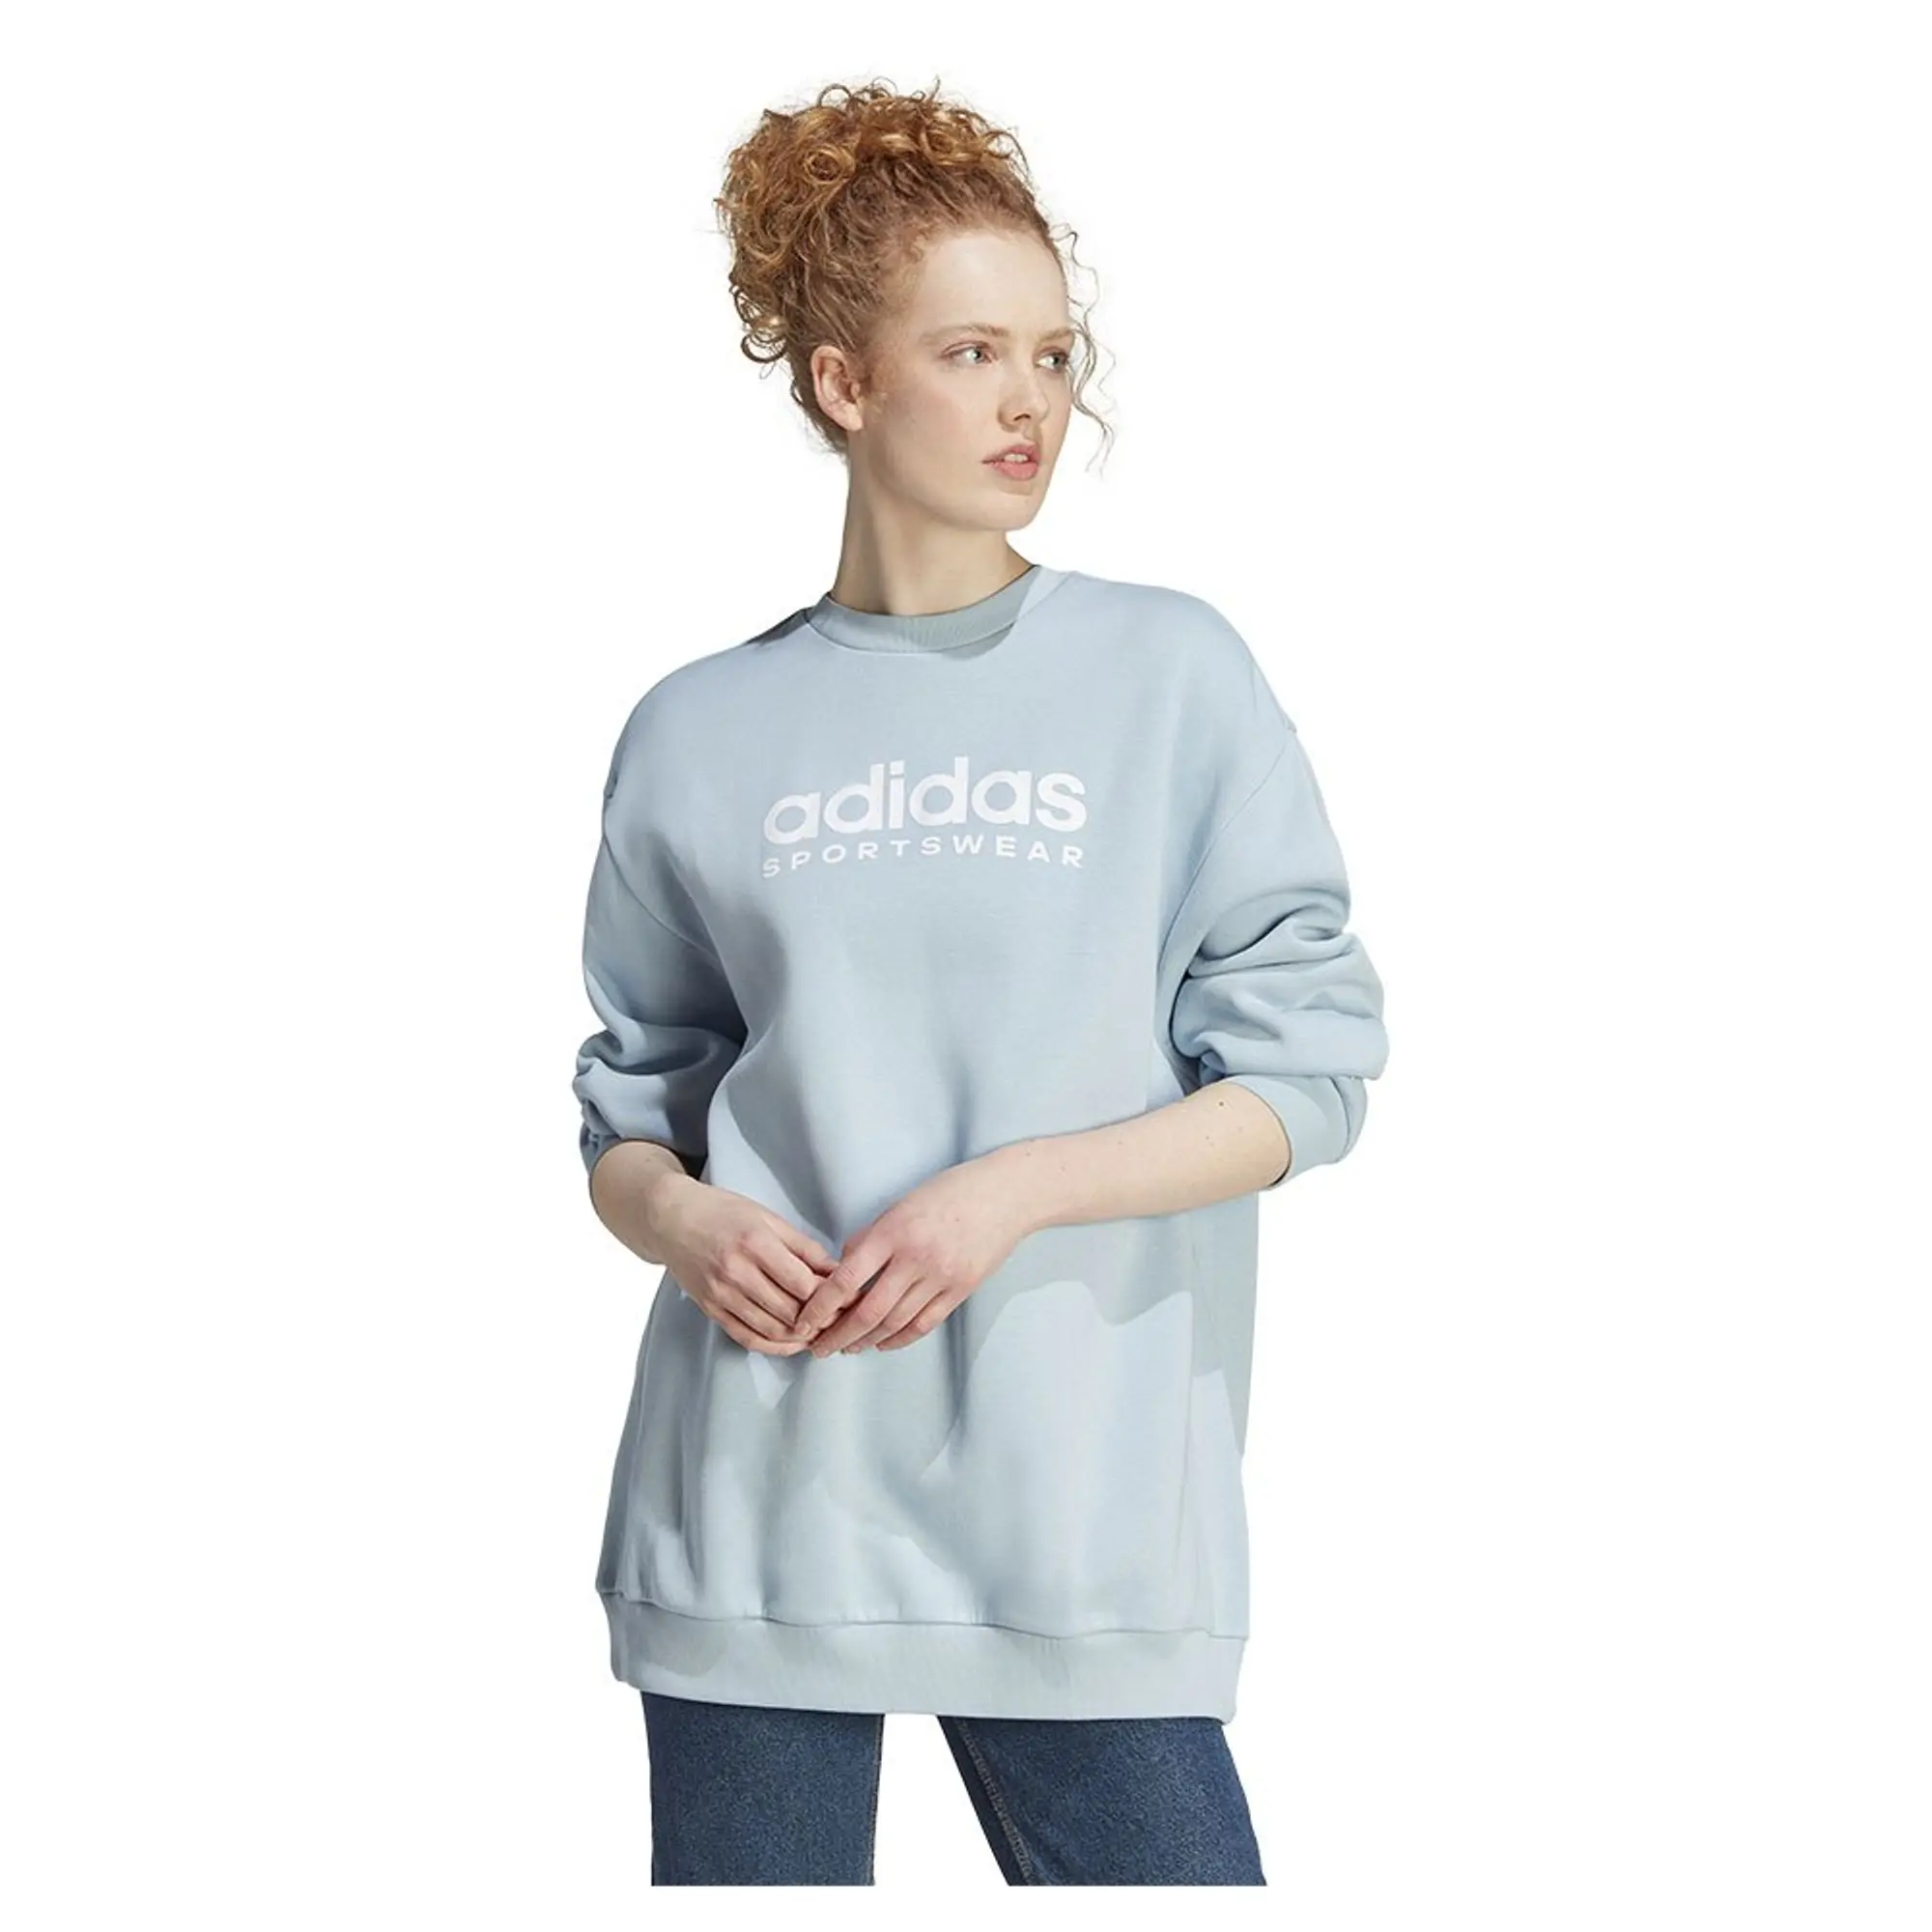 Adidas Jumpers & Sweatshirts